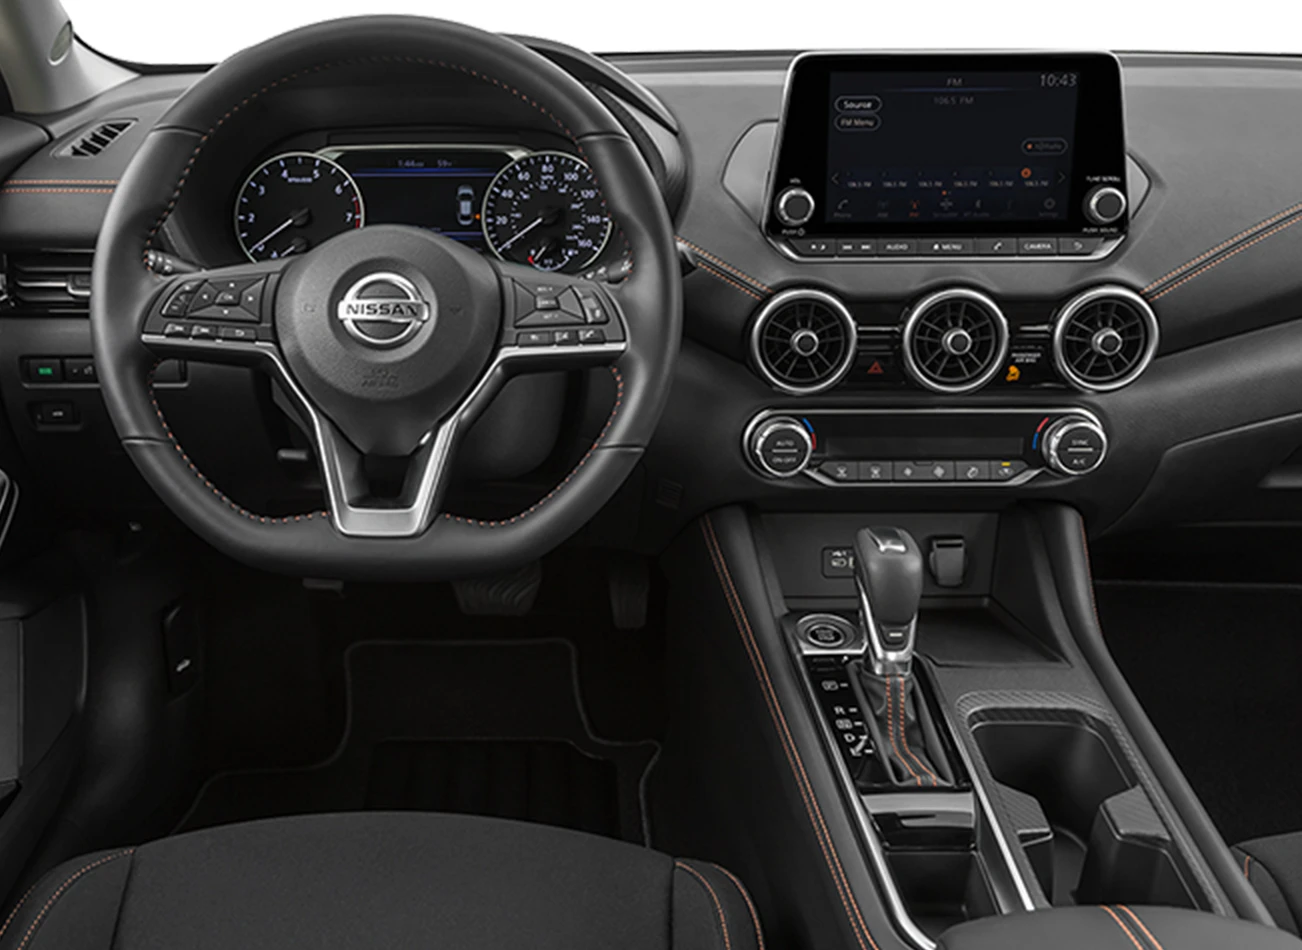 Nissan Sentra: Reviews, Photos, and More: Reasons to Buy #5 | CarMax